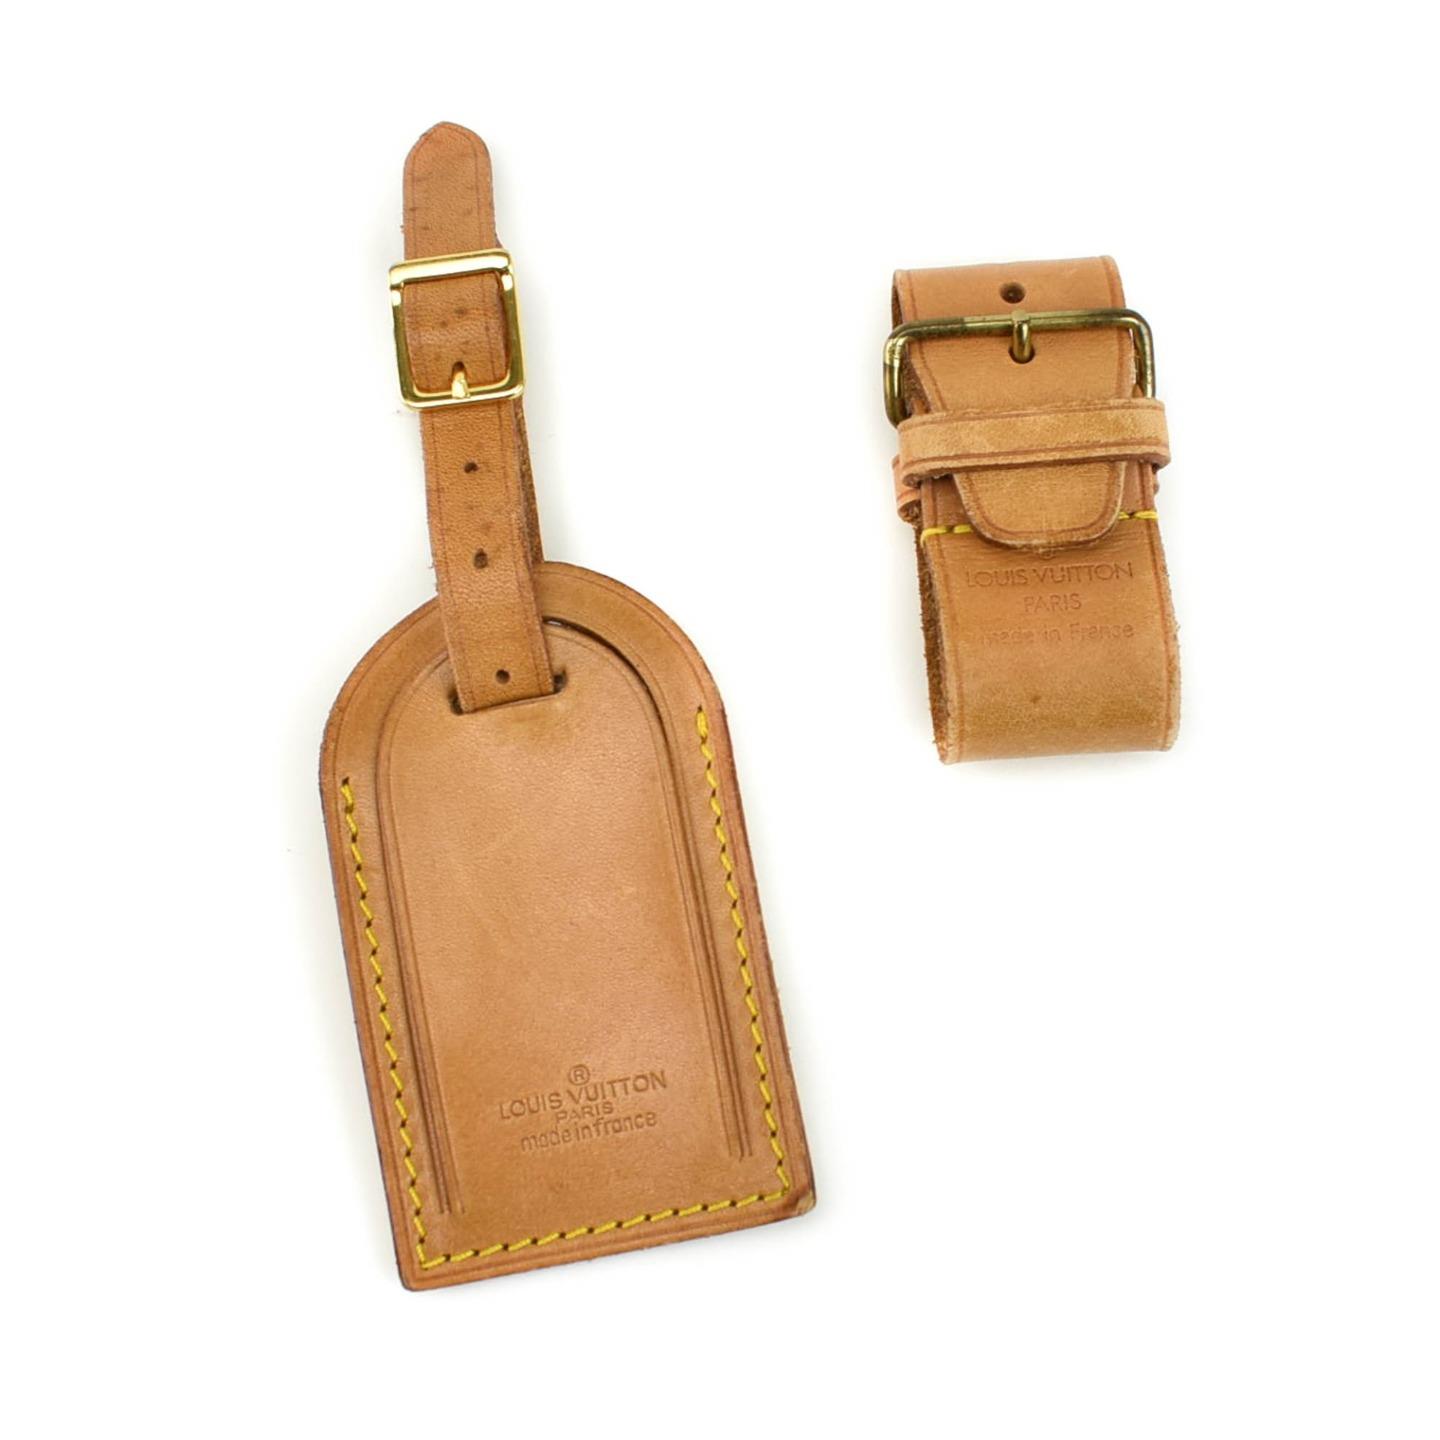 LOUIS VUITTON: Tan, Vachetta Leather Logo Luggage Tag & Keepall Set (oz) | eBay